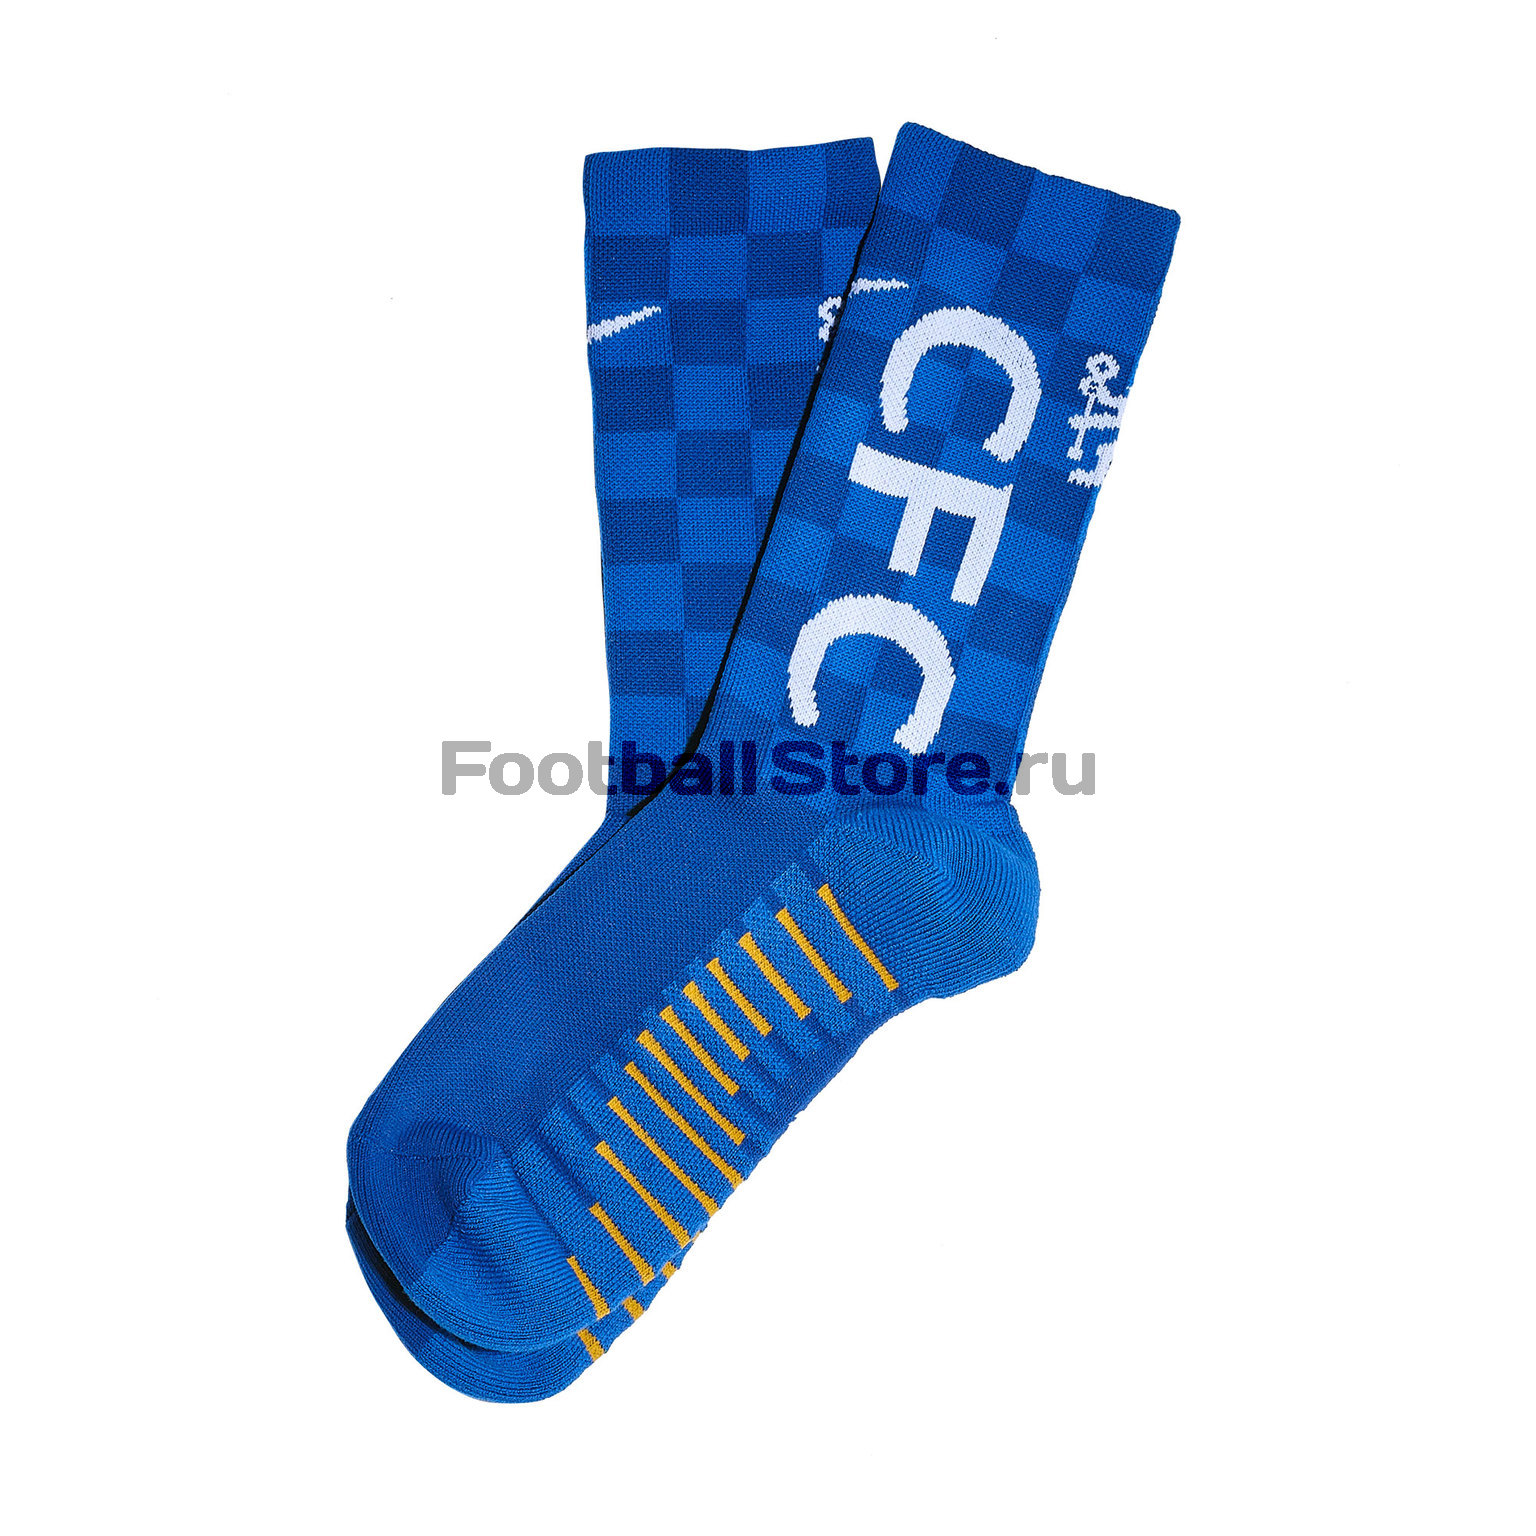 Носки Nike Chelsea Crew SX7560-495